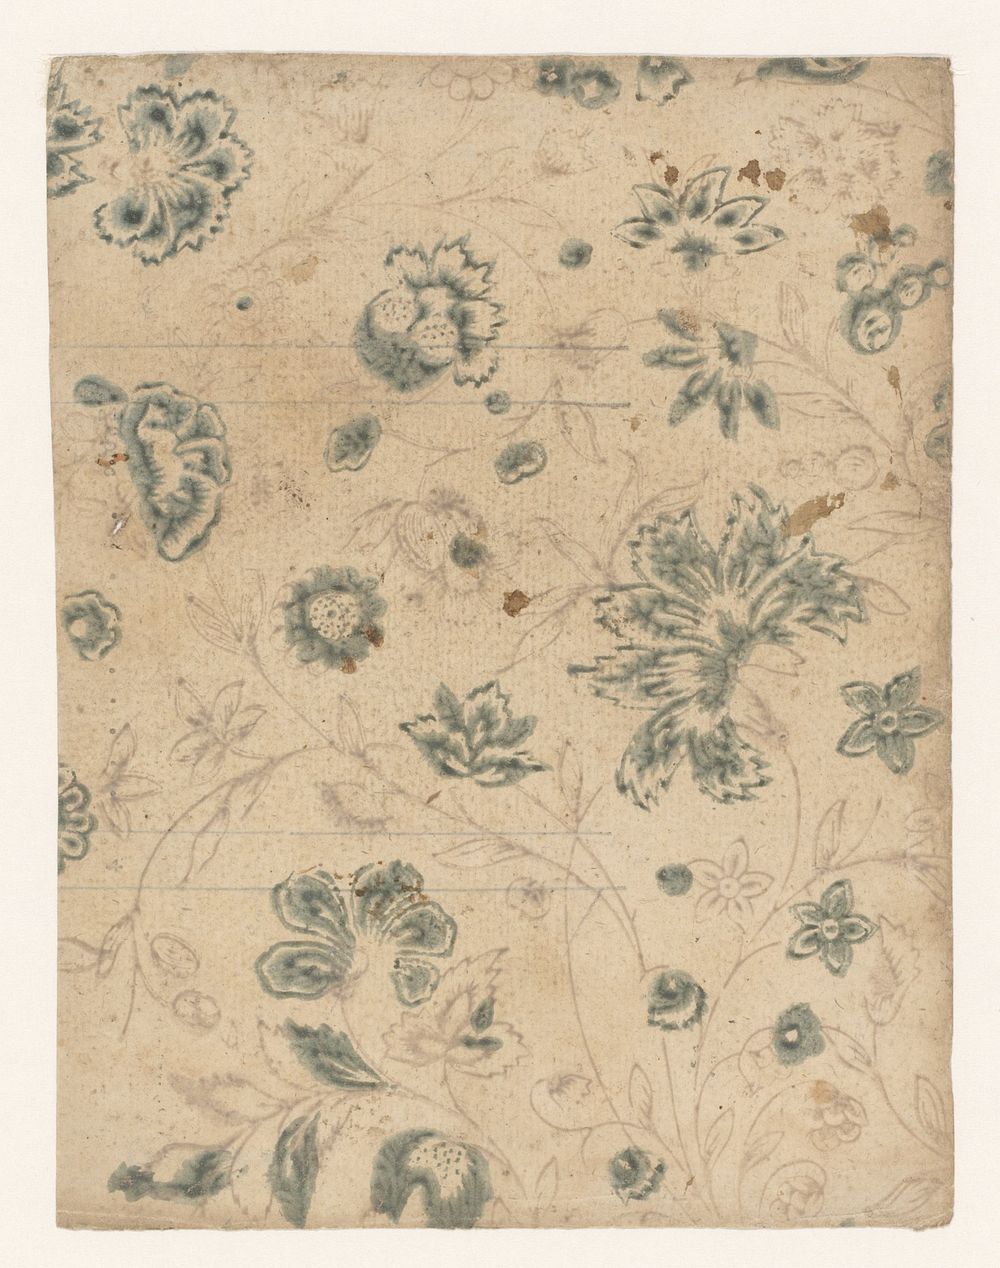 Blad met ranken met bloemen (1700 - 1850) by anonymous